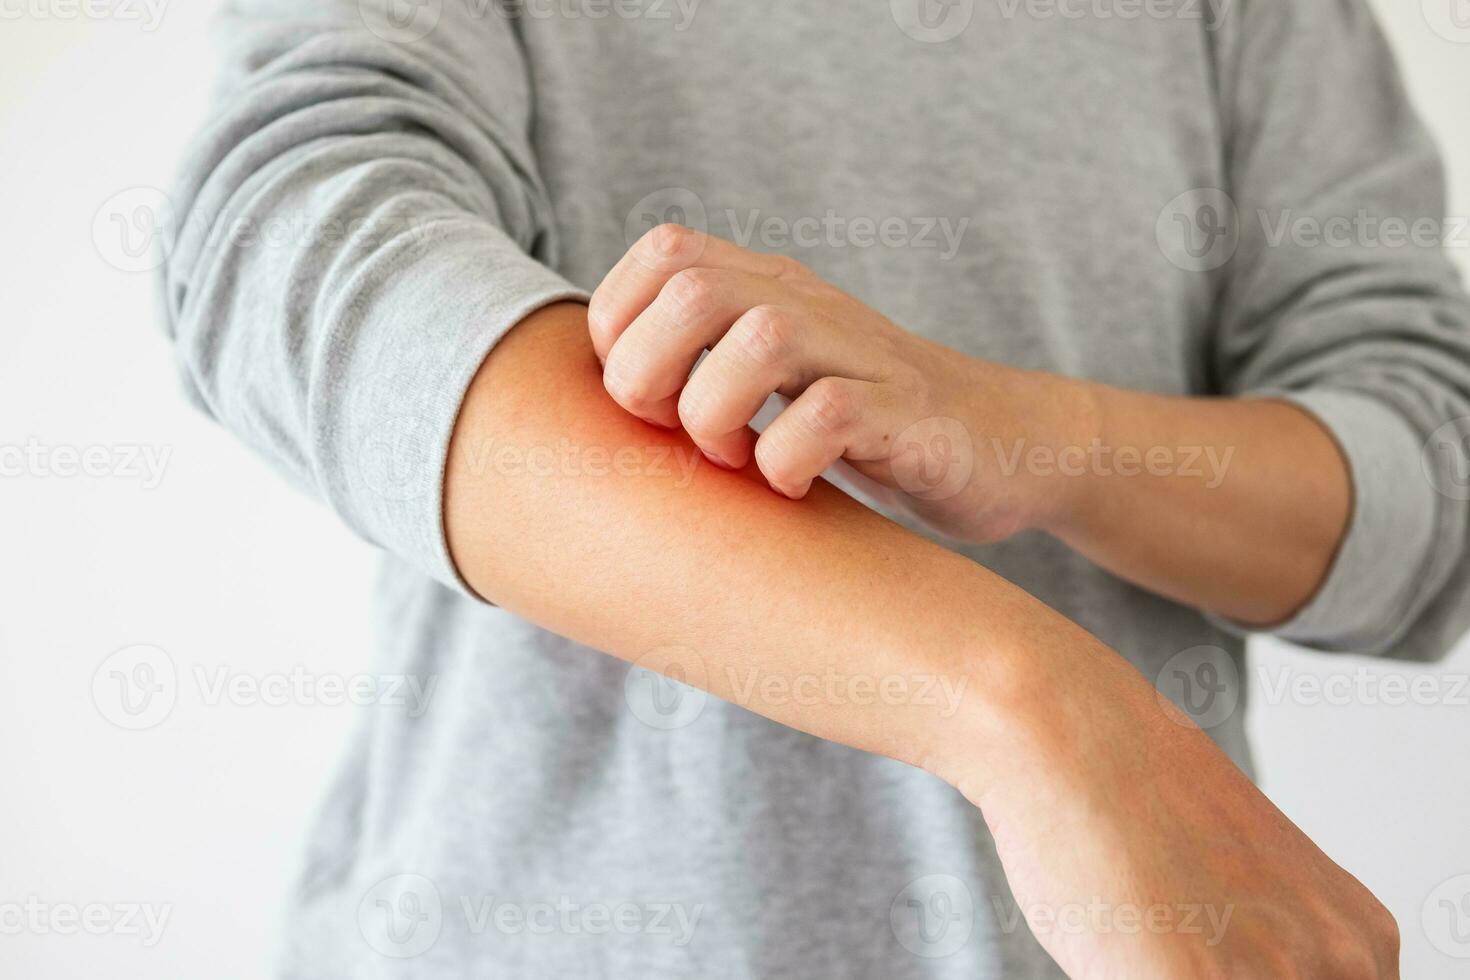 jeune homme asiatique qui démange et se gratte le bras à cause de la dermatite de l'eczéma de la peau sèche qui démange photo